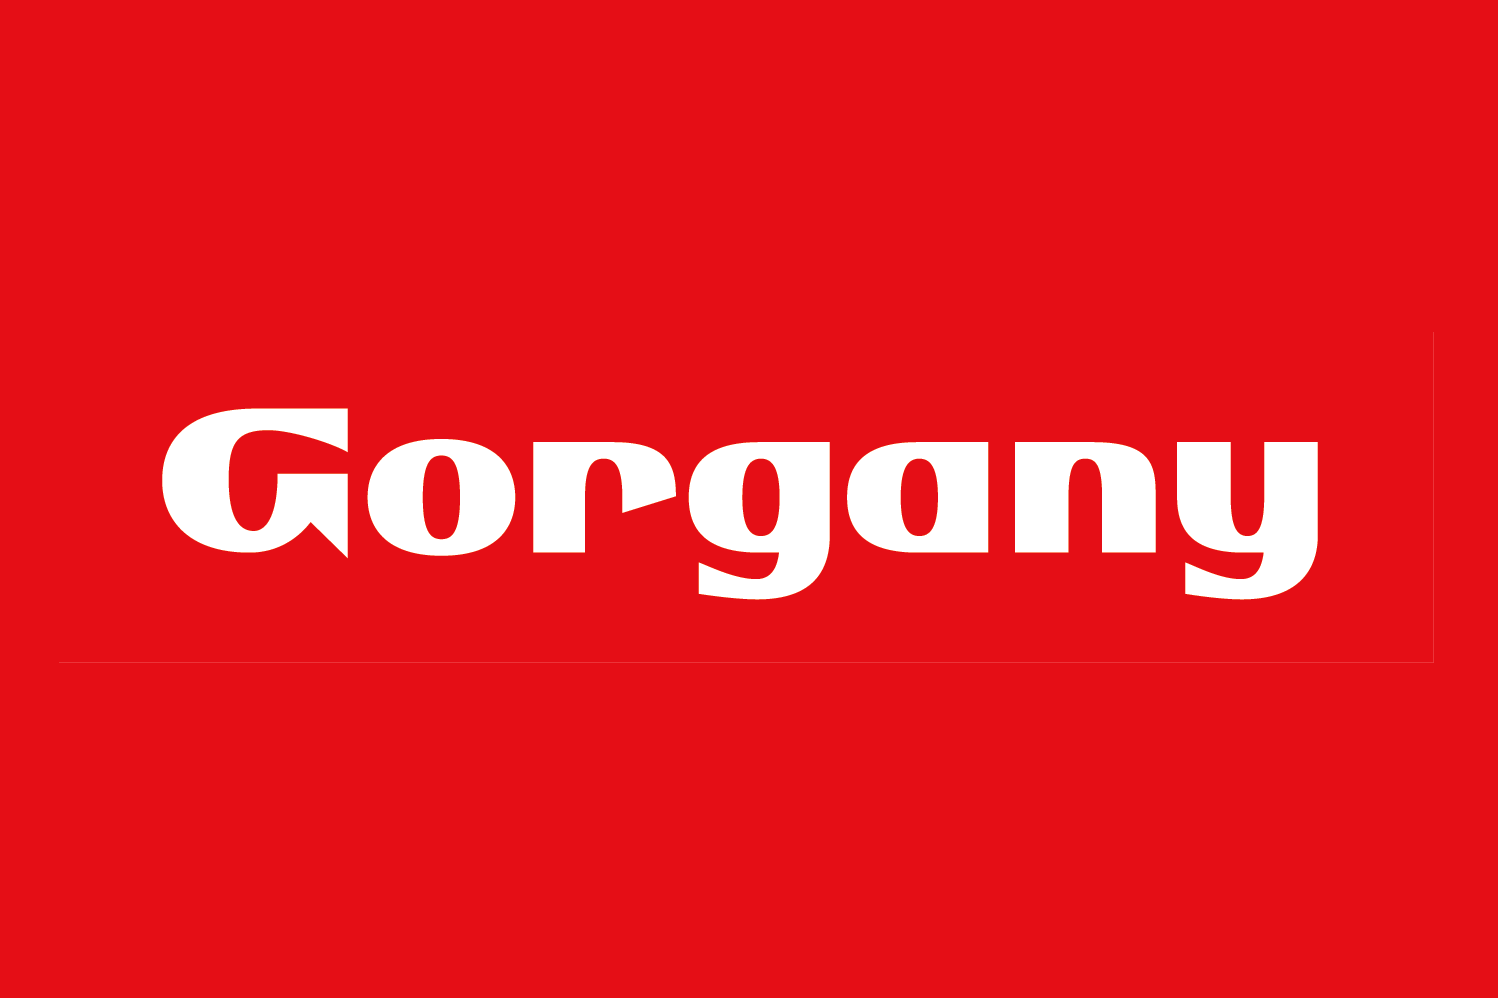 Gorgany